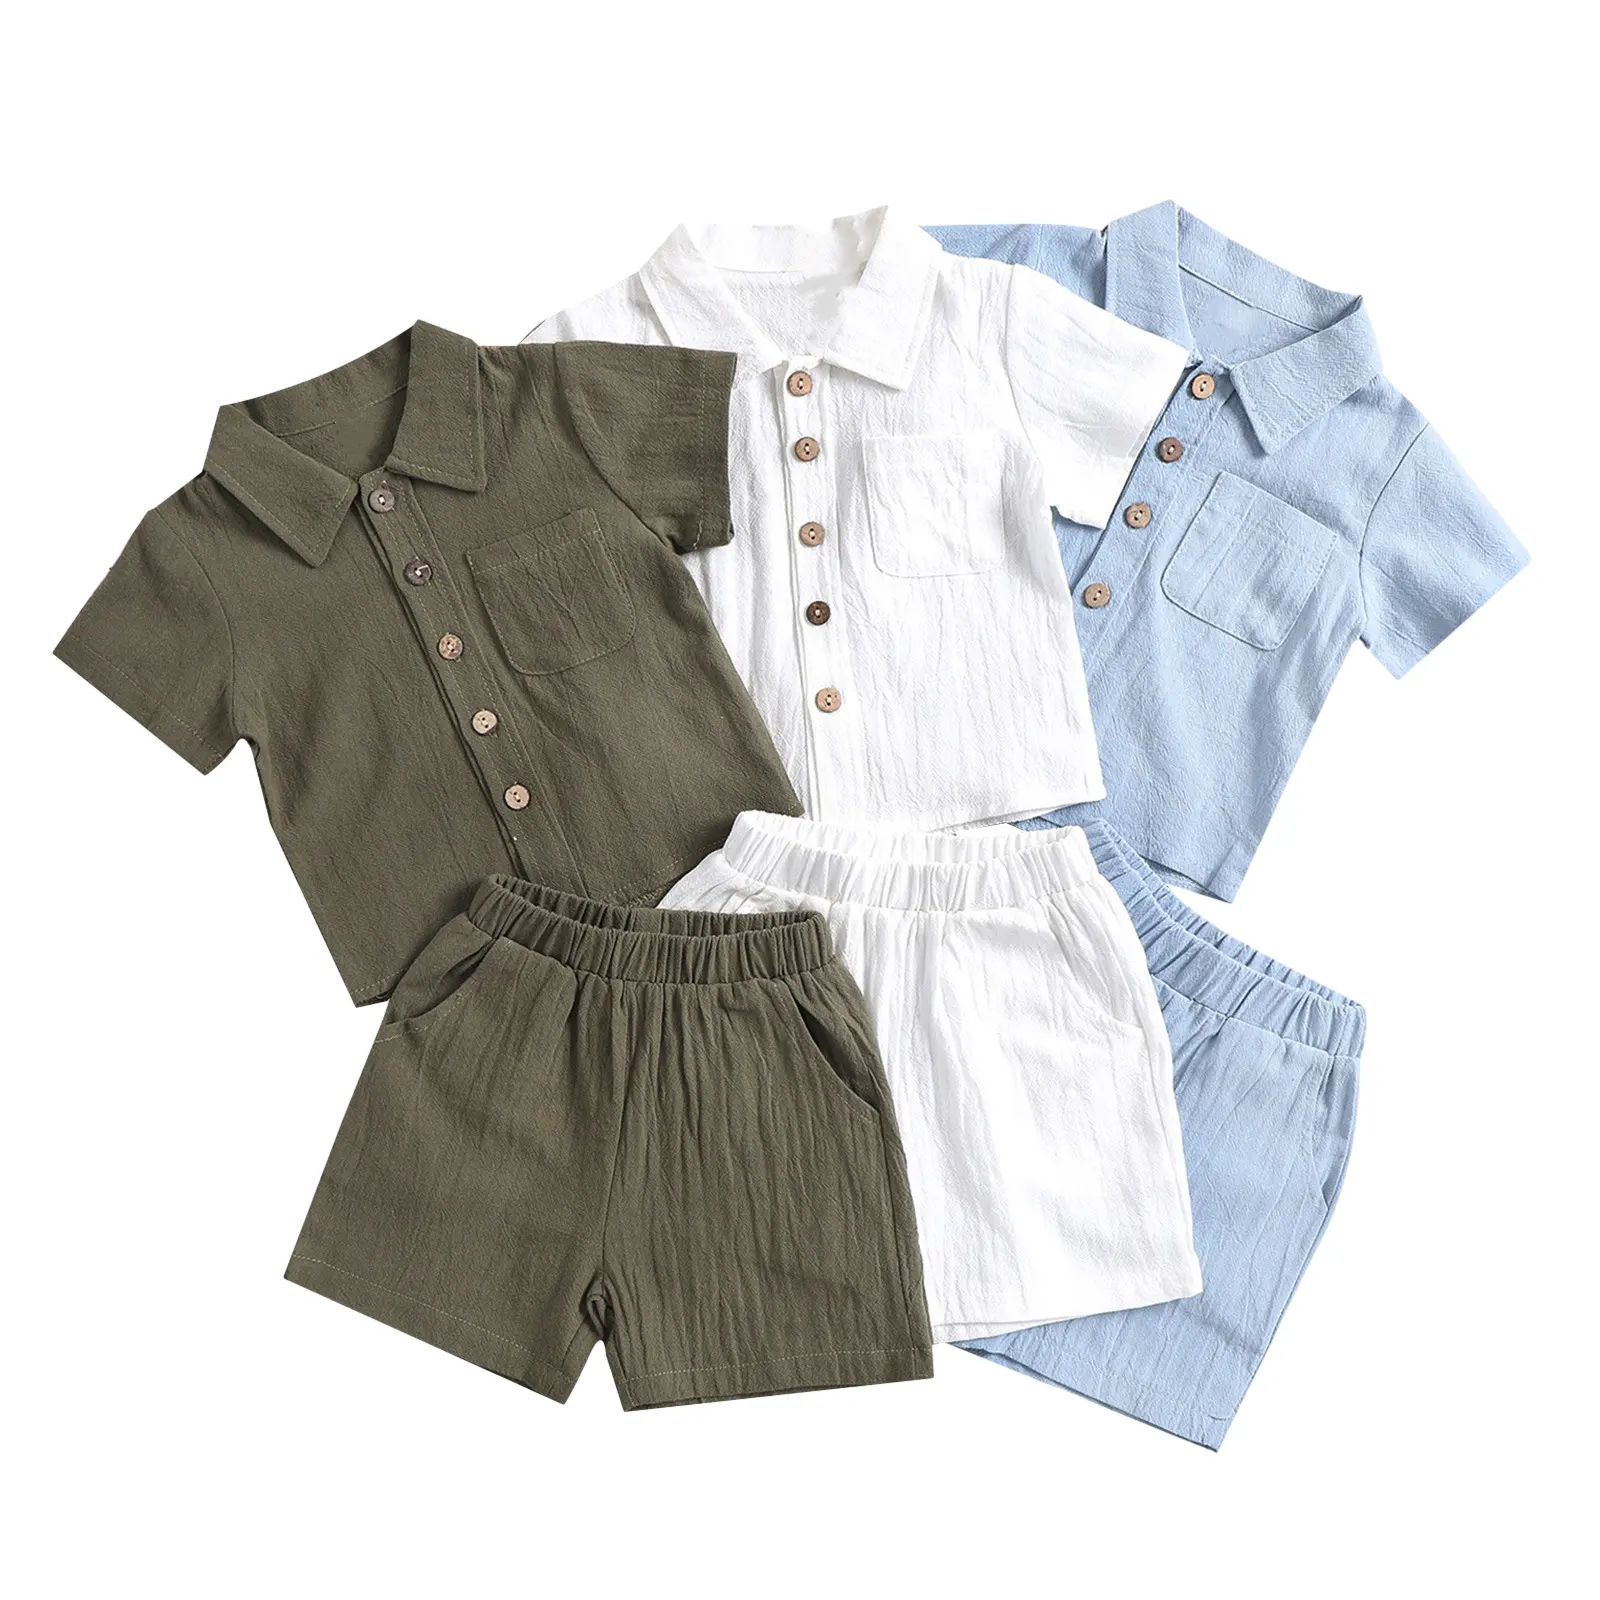 Atacado Verão Algodão E Linho Casual Short Sleeve Lapel Kids Polo Camisas Solid Color Boys Clothing Set